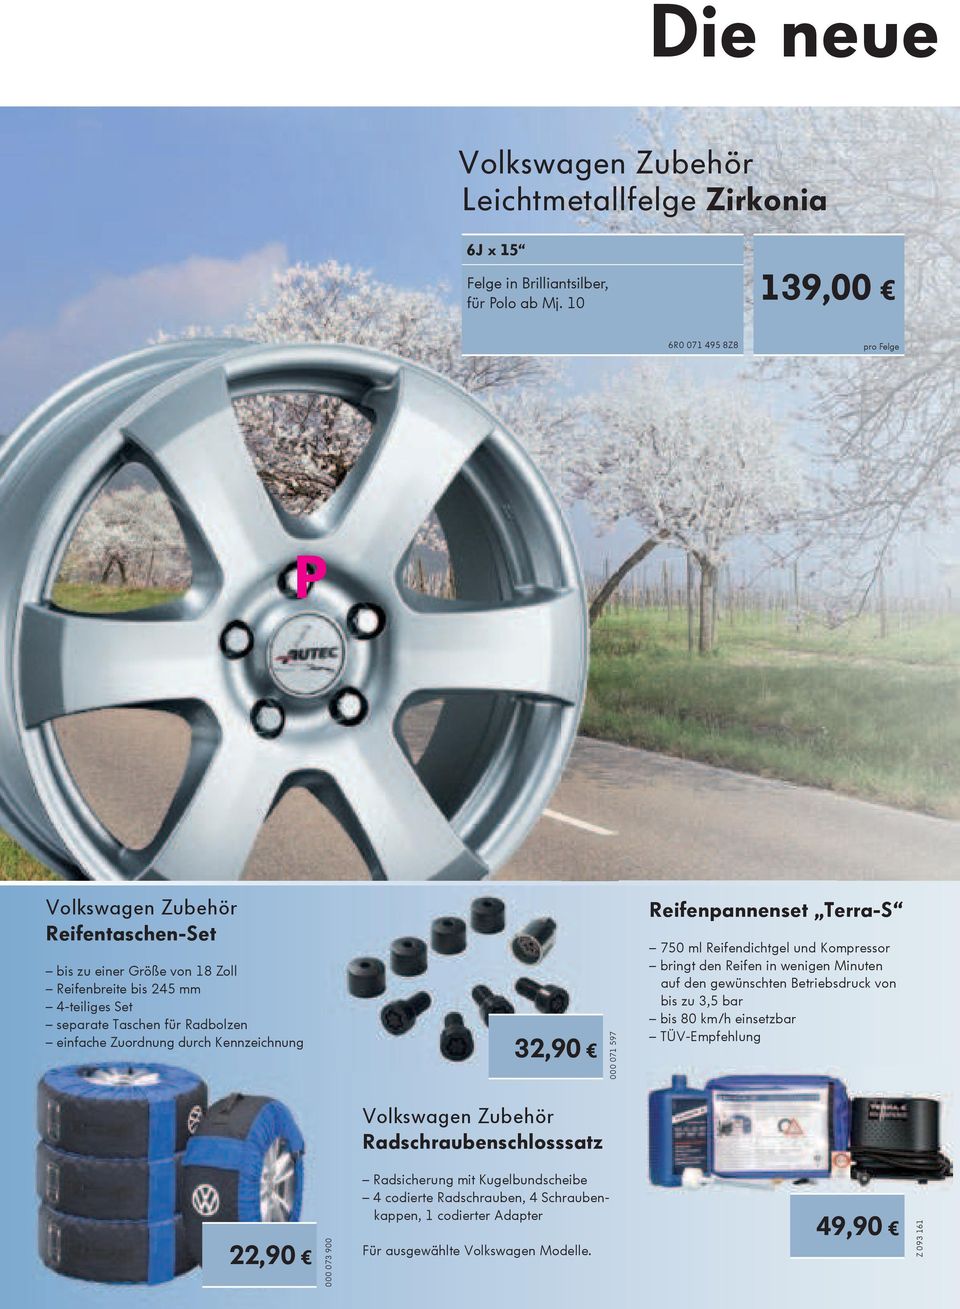 Zuordnung durch Kennzeichnung 32,90 000 071 597 Reifenpannenset Terra-S 750 ml Reifendichtgel und Kompressor bringt den Reifen in wenigen Minuten auf den gewünschten